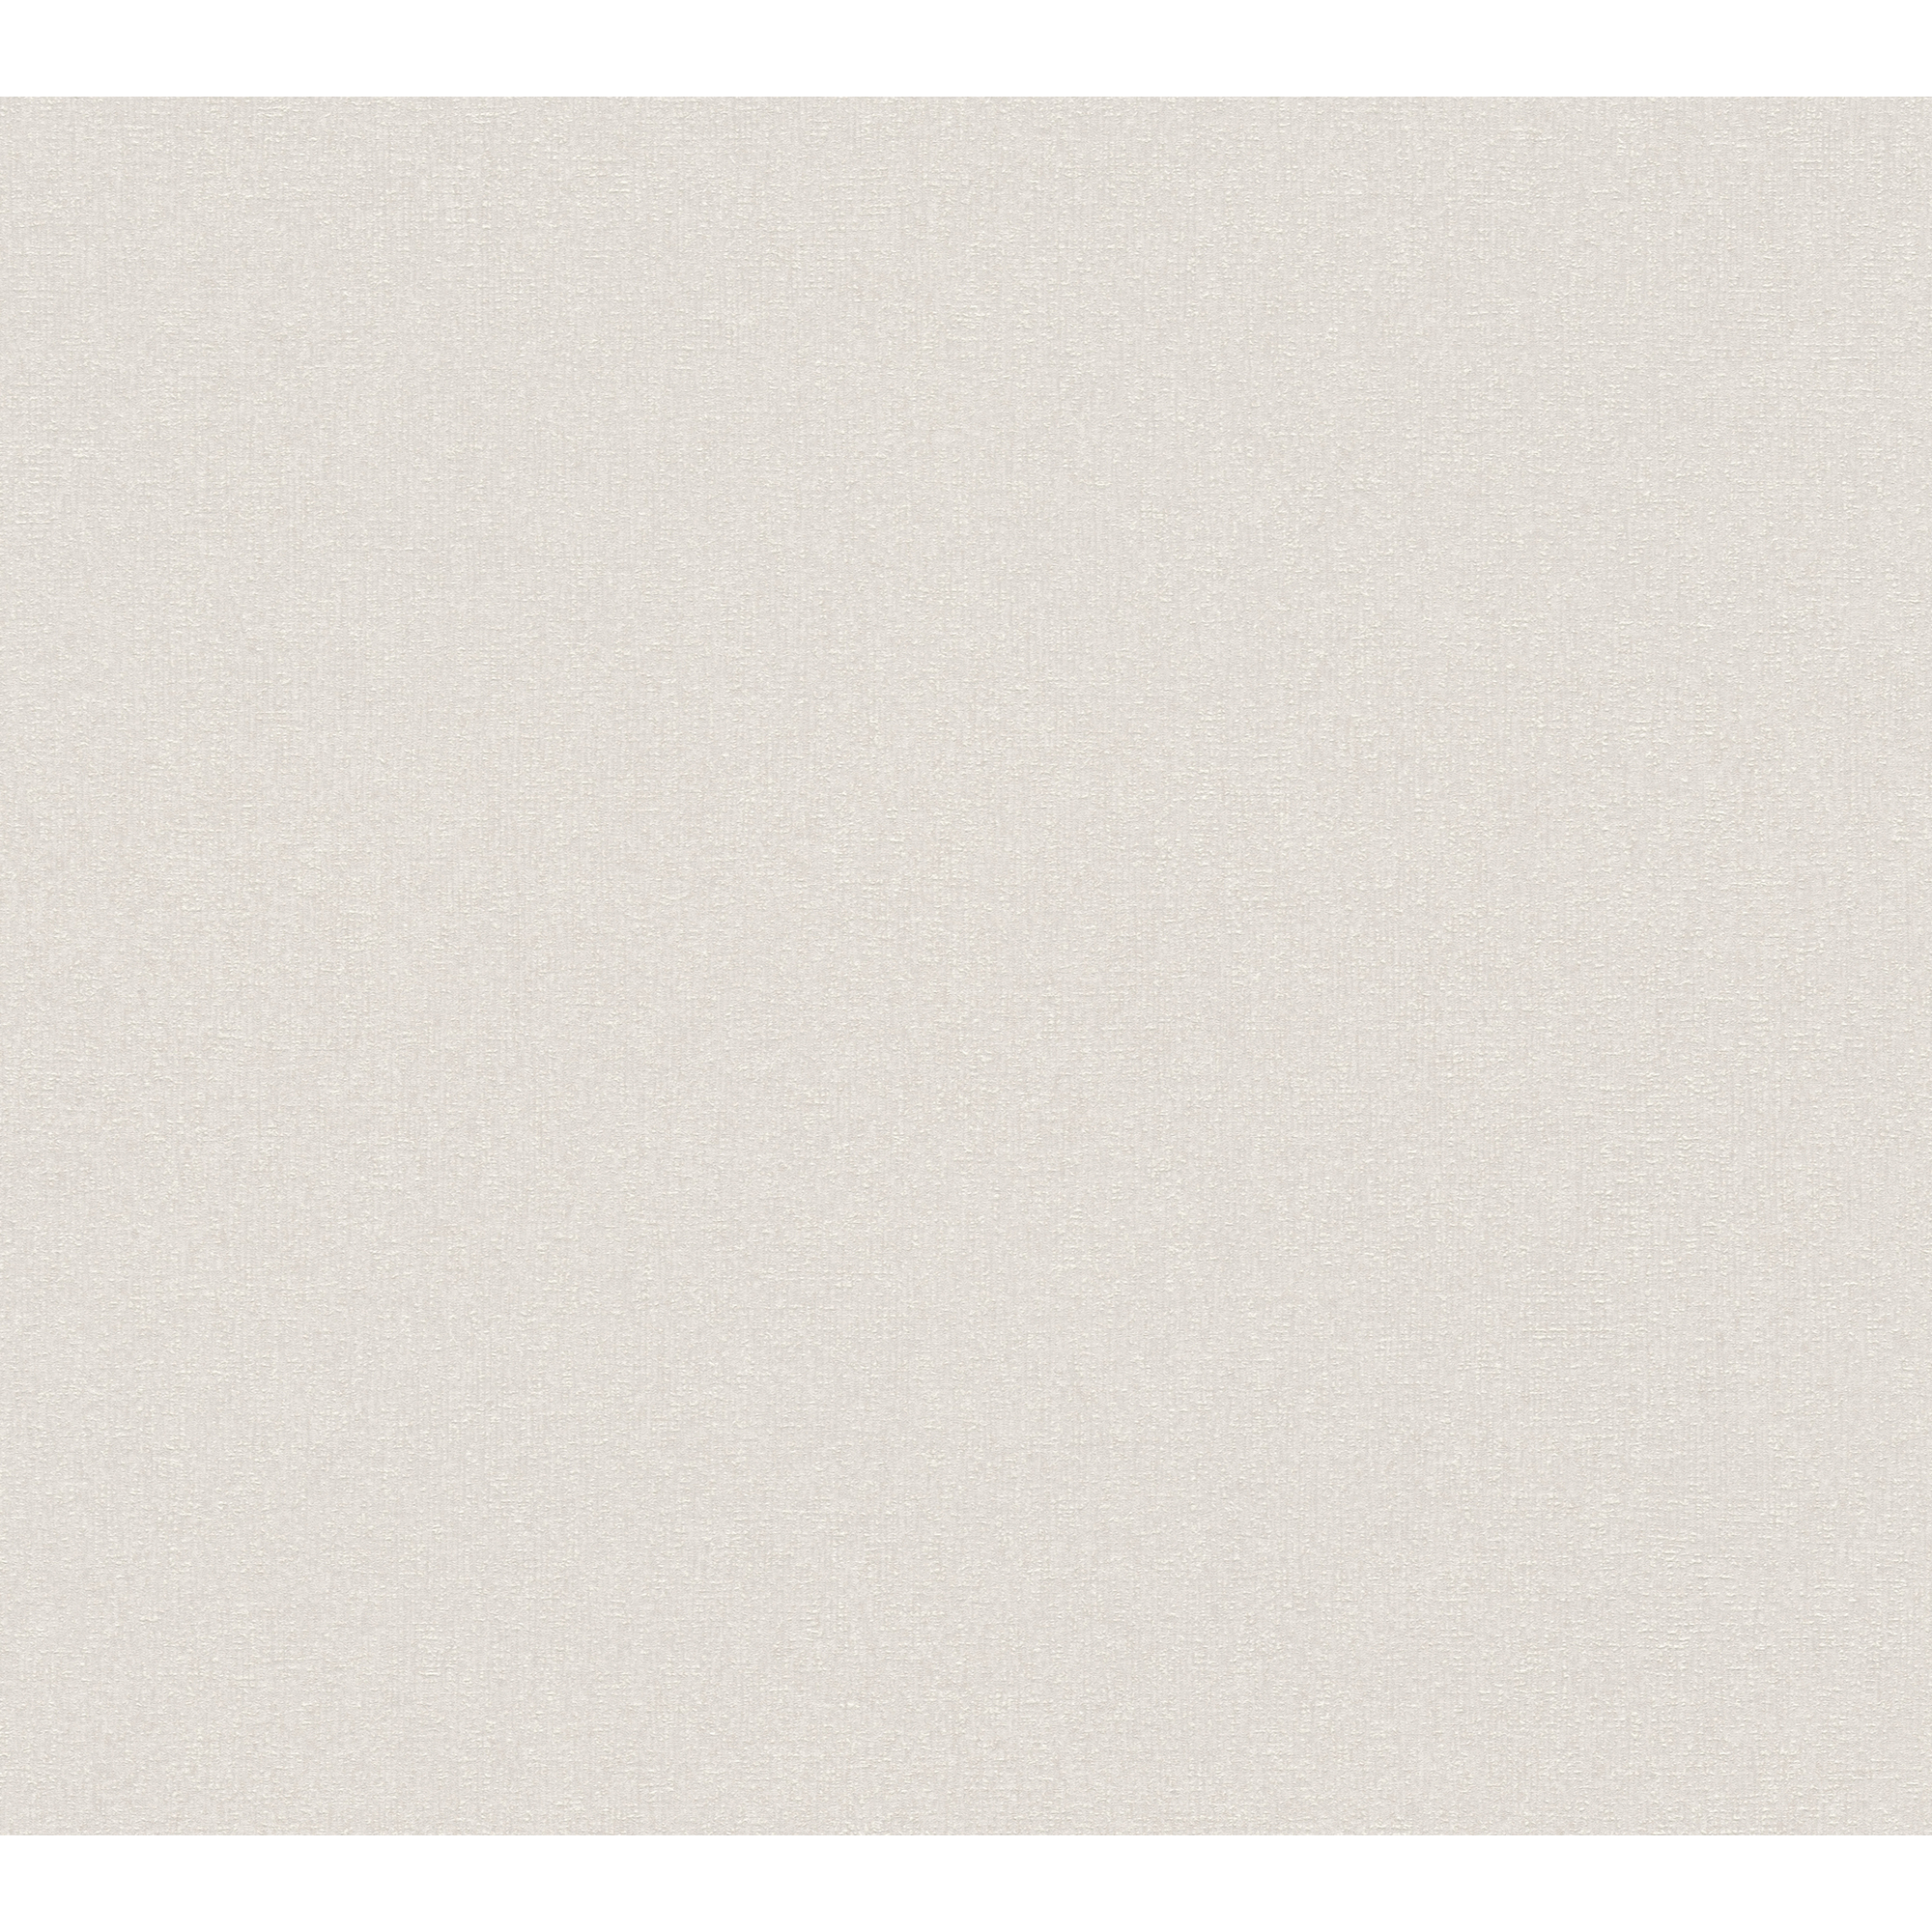 Vliestapete 'Terra' Struktur beige/braun 10,05 x 0,53 m + product picture